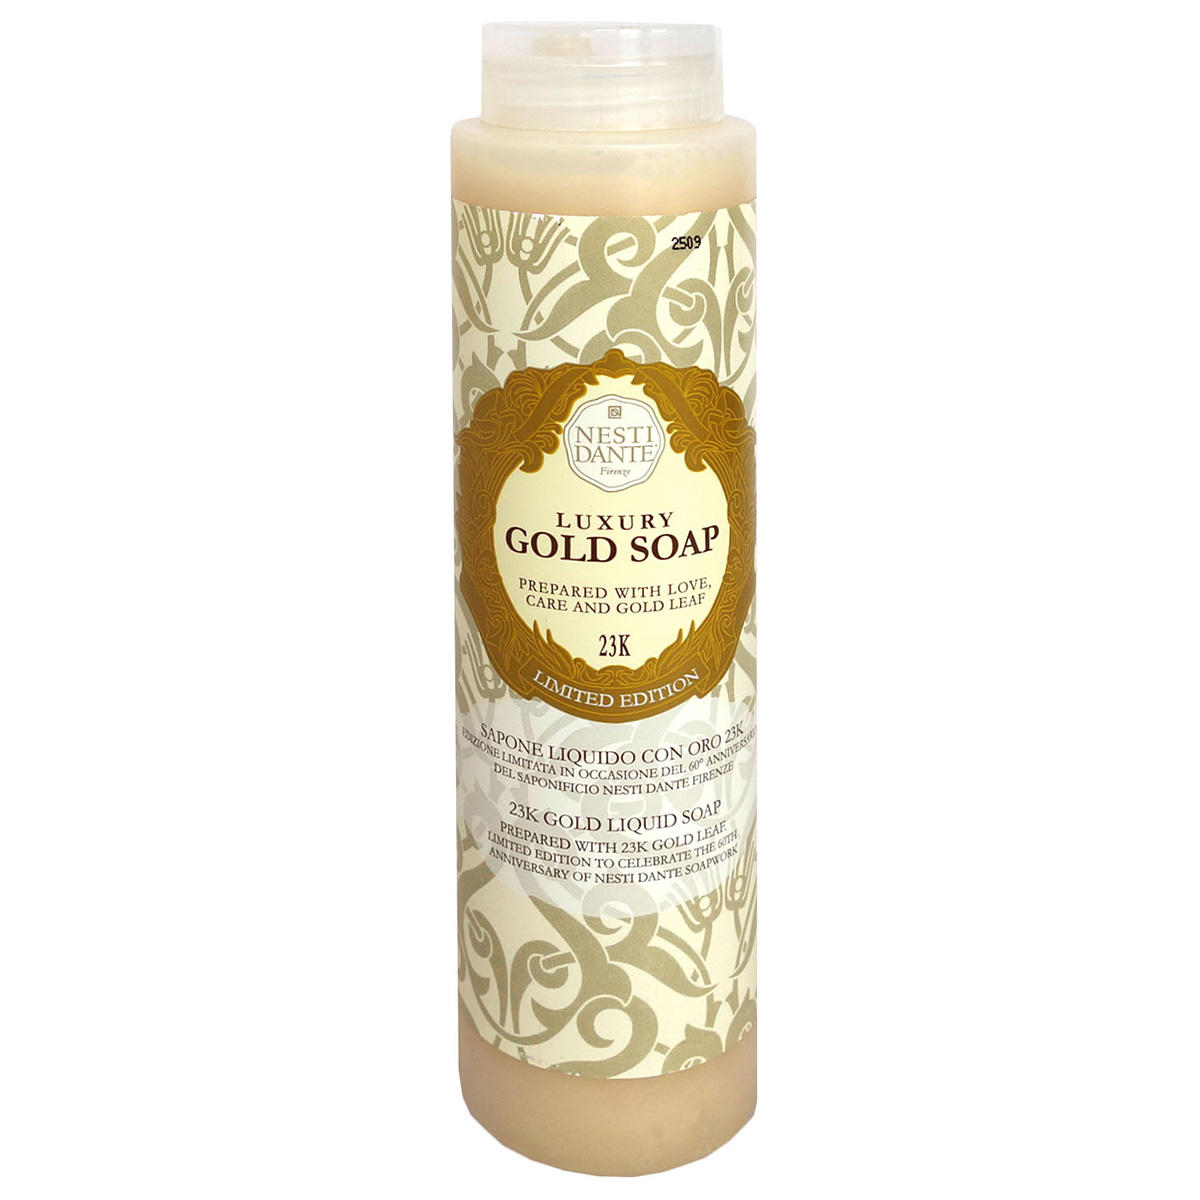 Nesti Dante 60th Anniversary Luxury Gold Soap  - 1